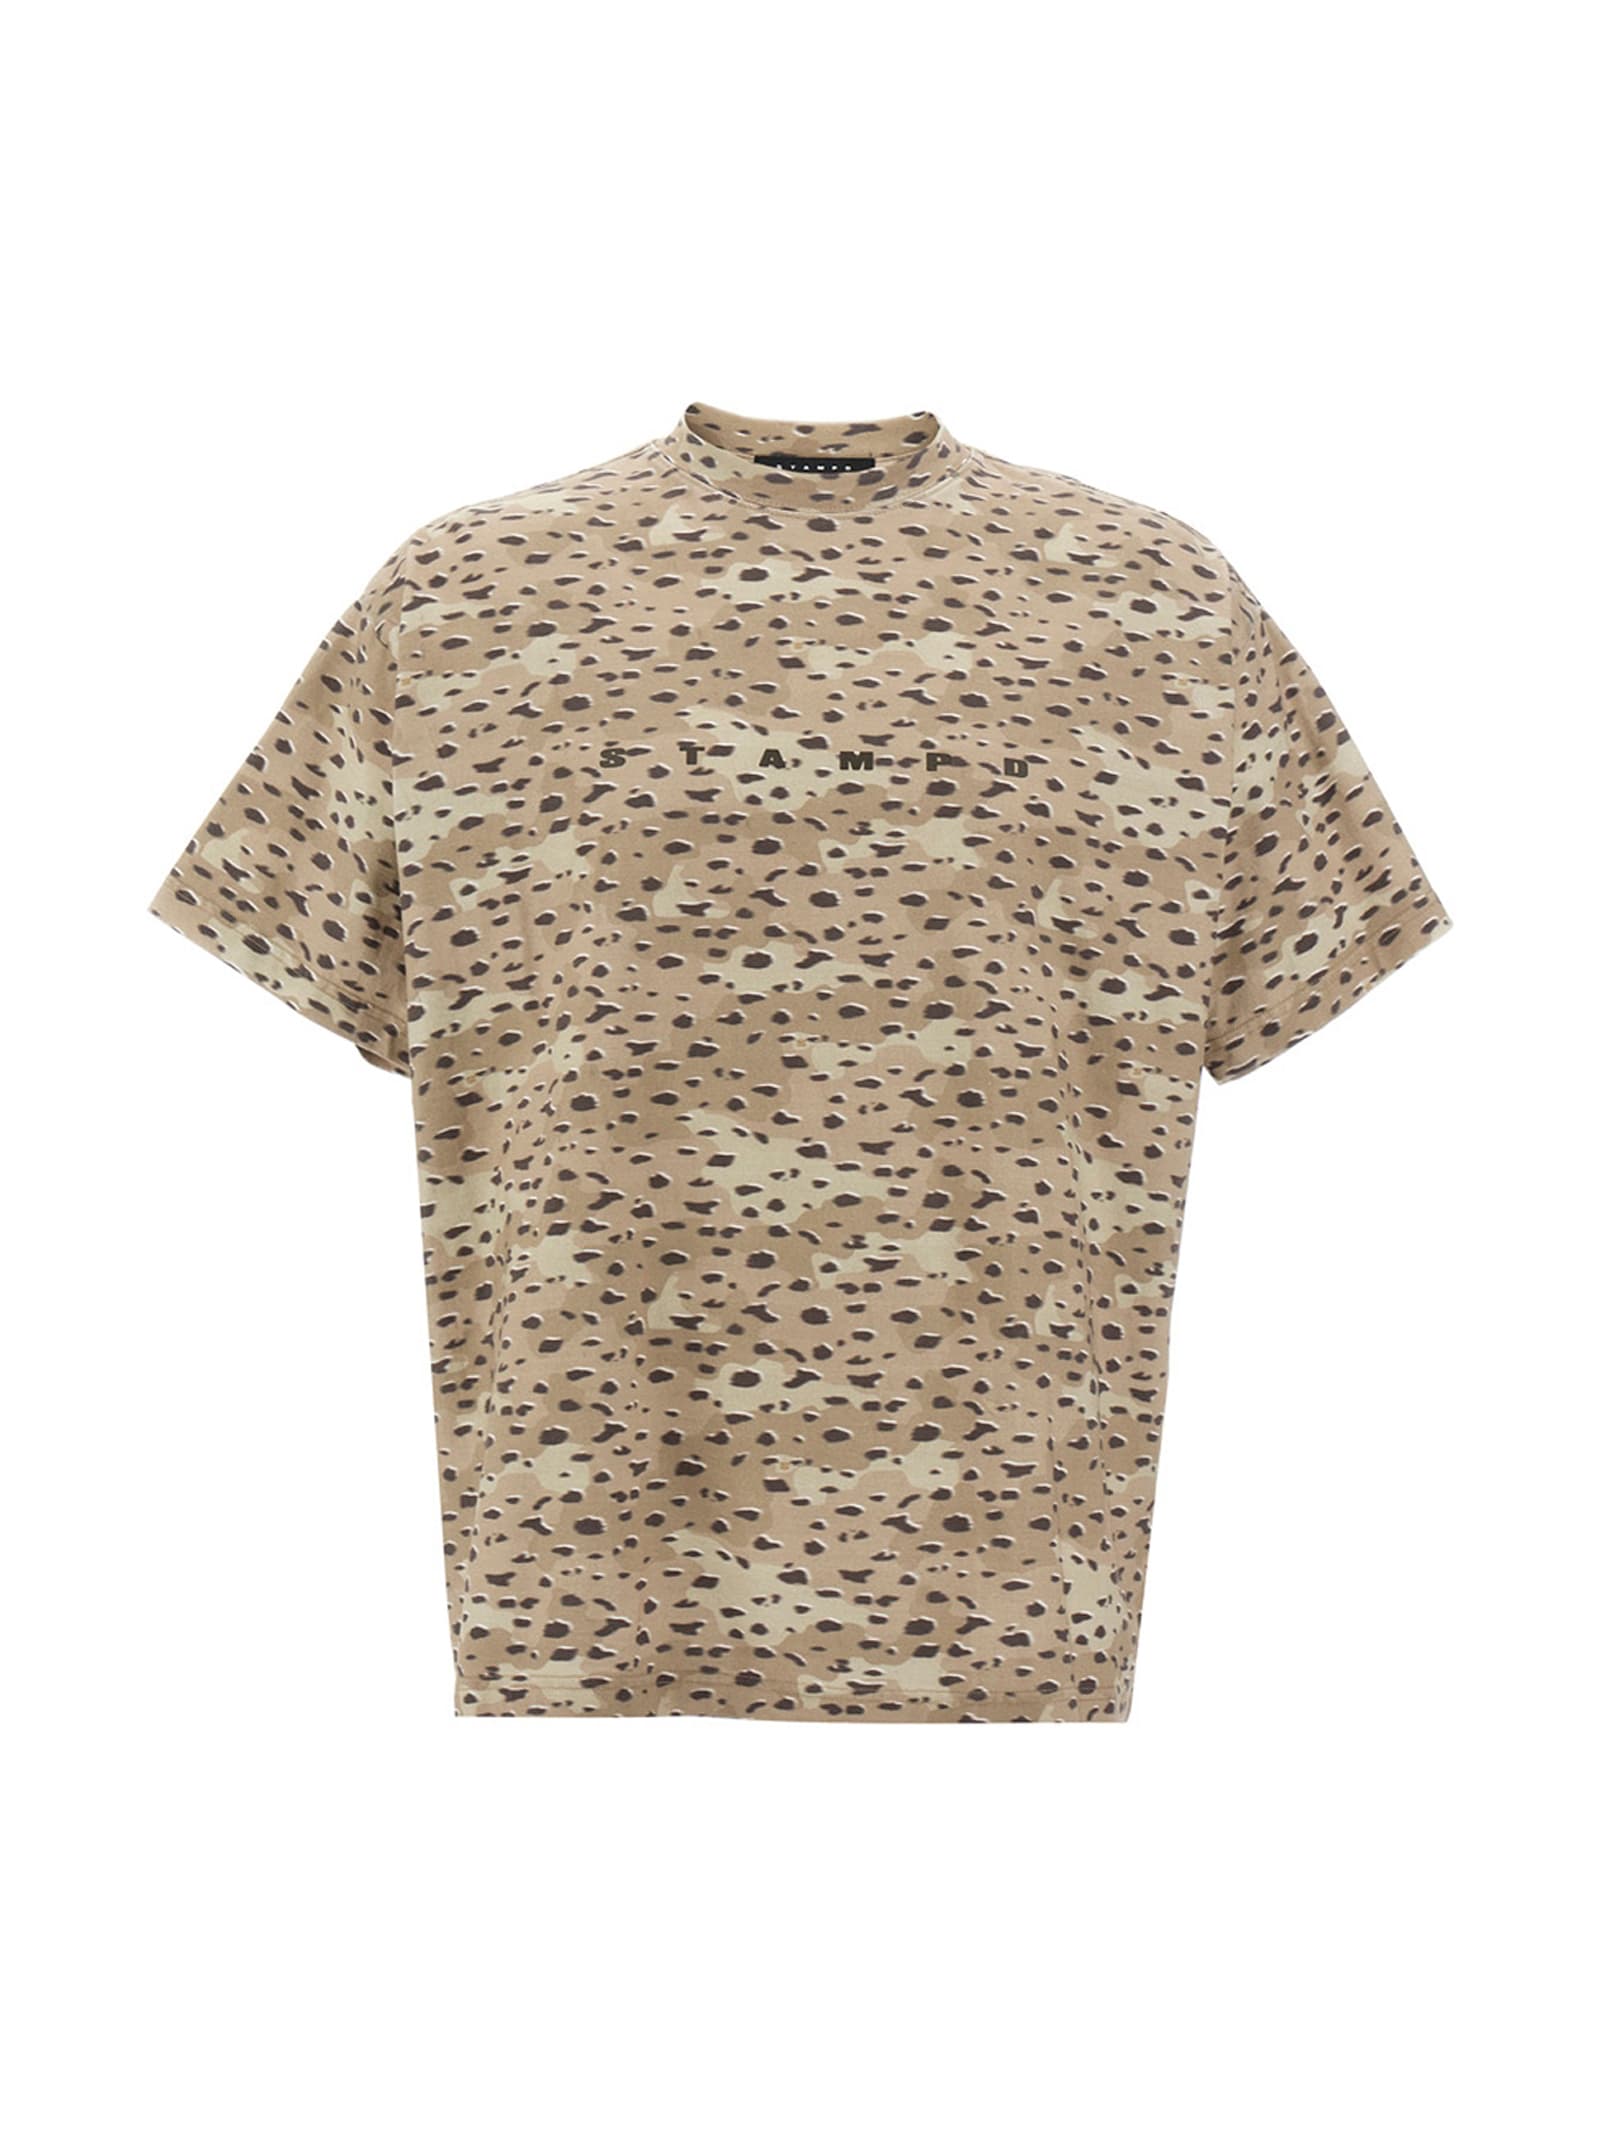 T-shirt camo Leopard